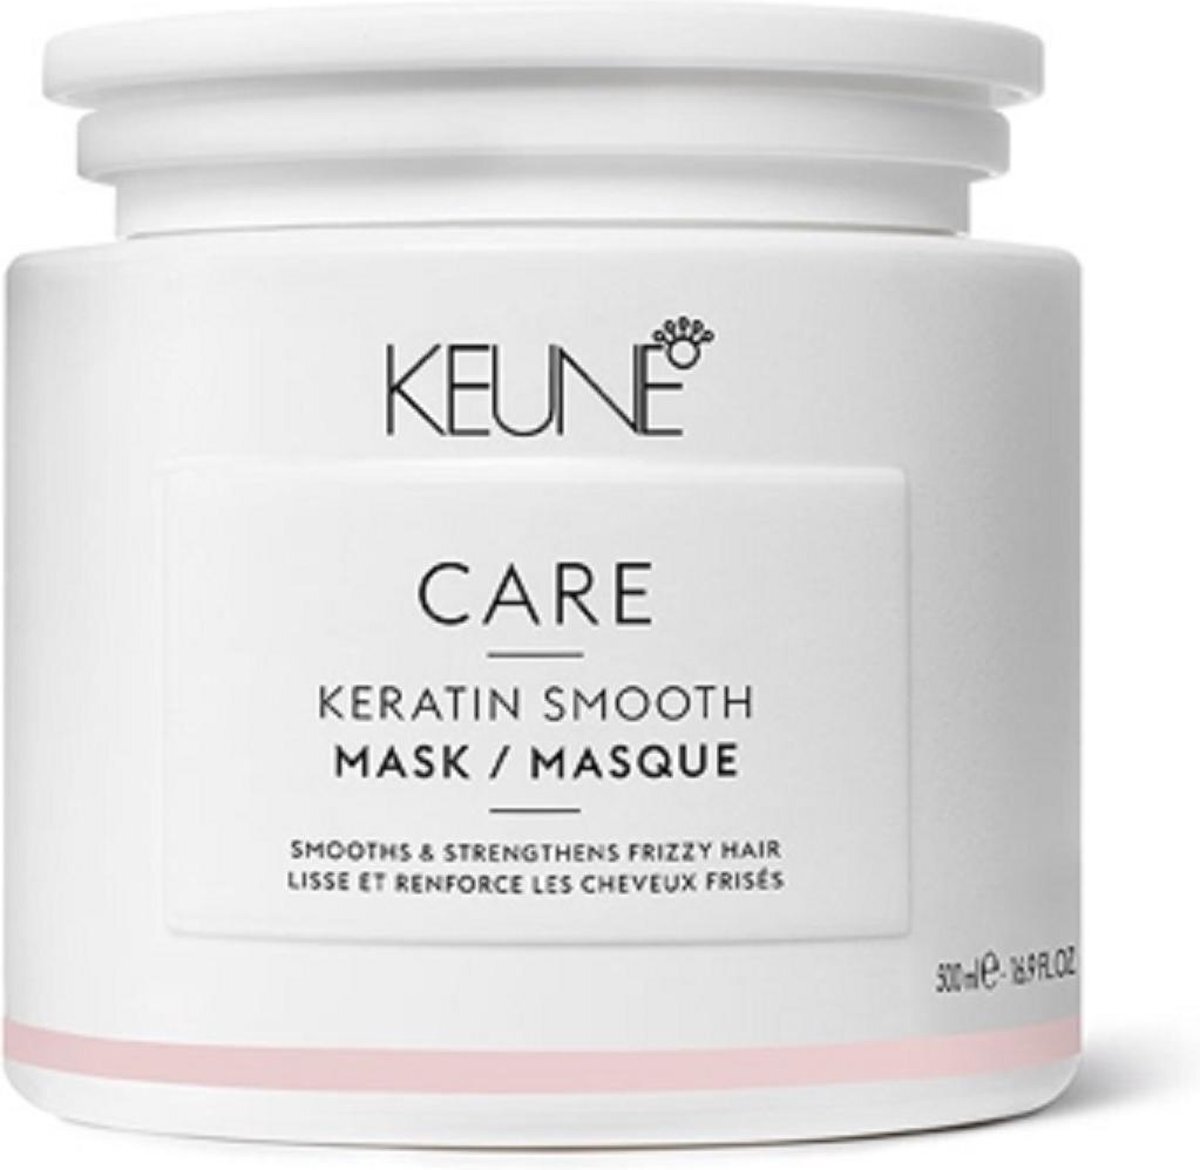 Keune Care - Keratin Smooth Mask 500ml